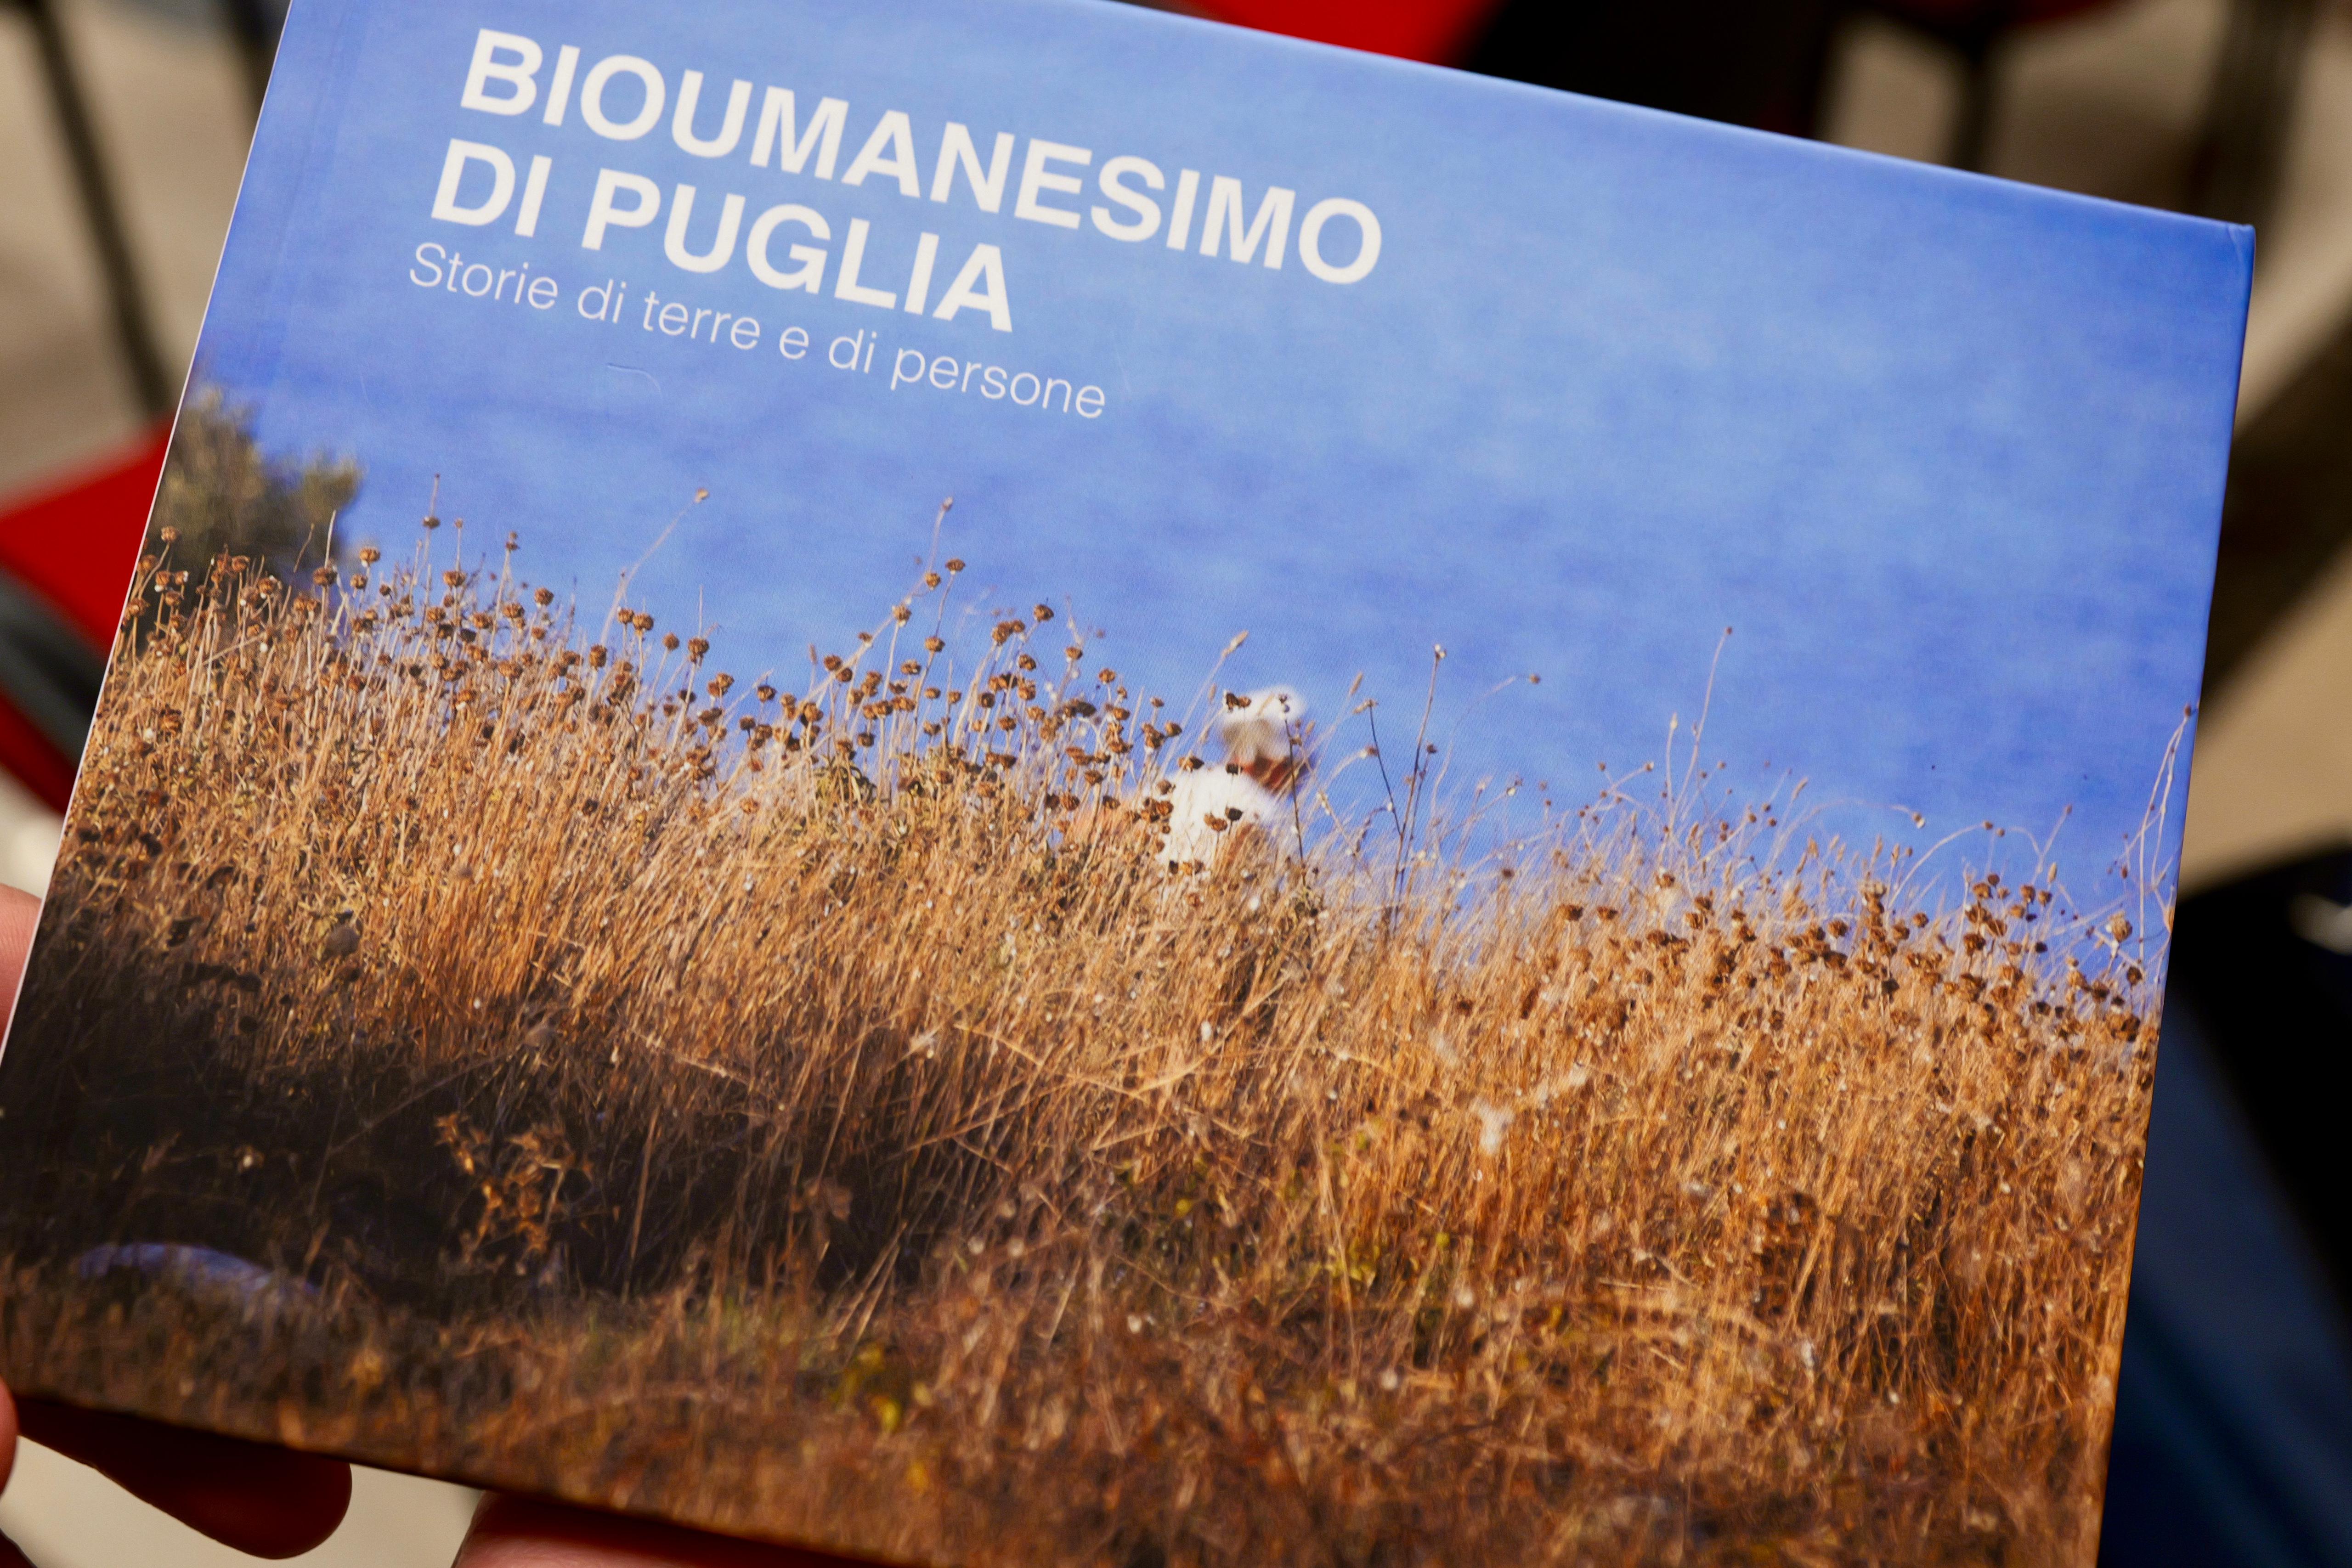 Galleria Memorie, legami e comunità nel Bioumanesimo di Puglia - Diapositiva 2 di 15